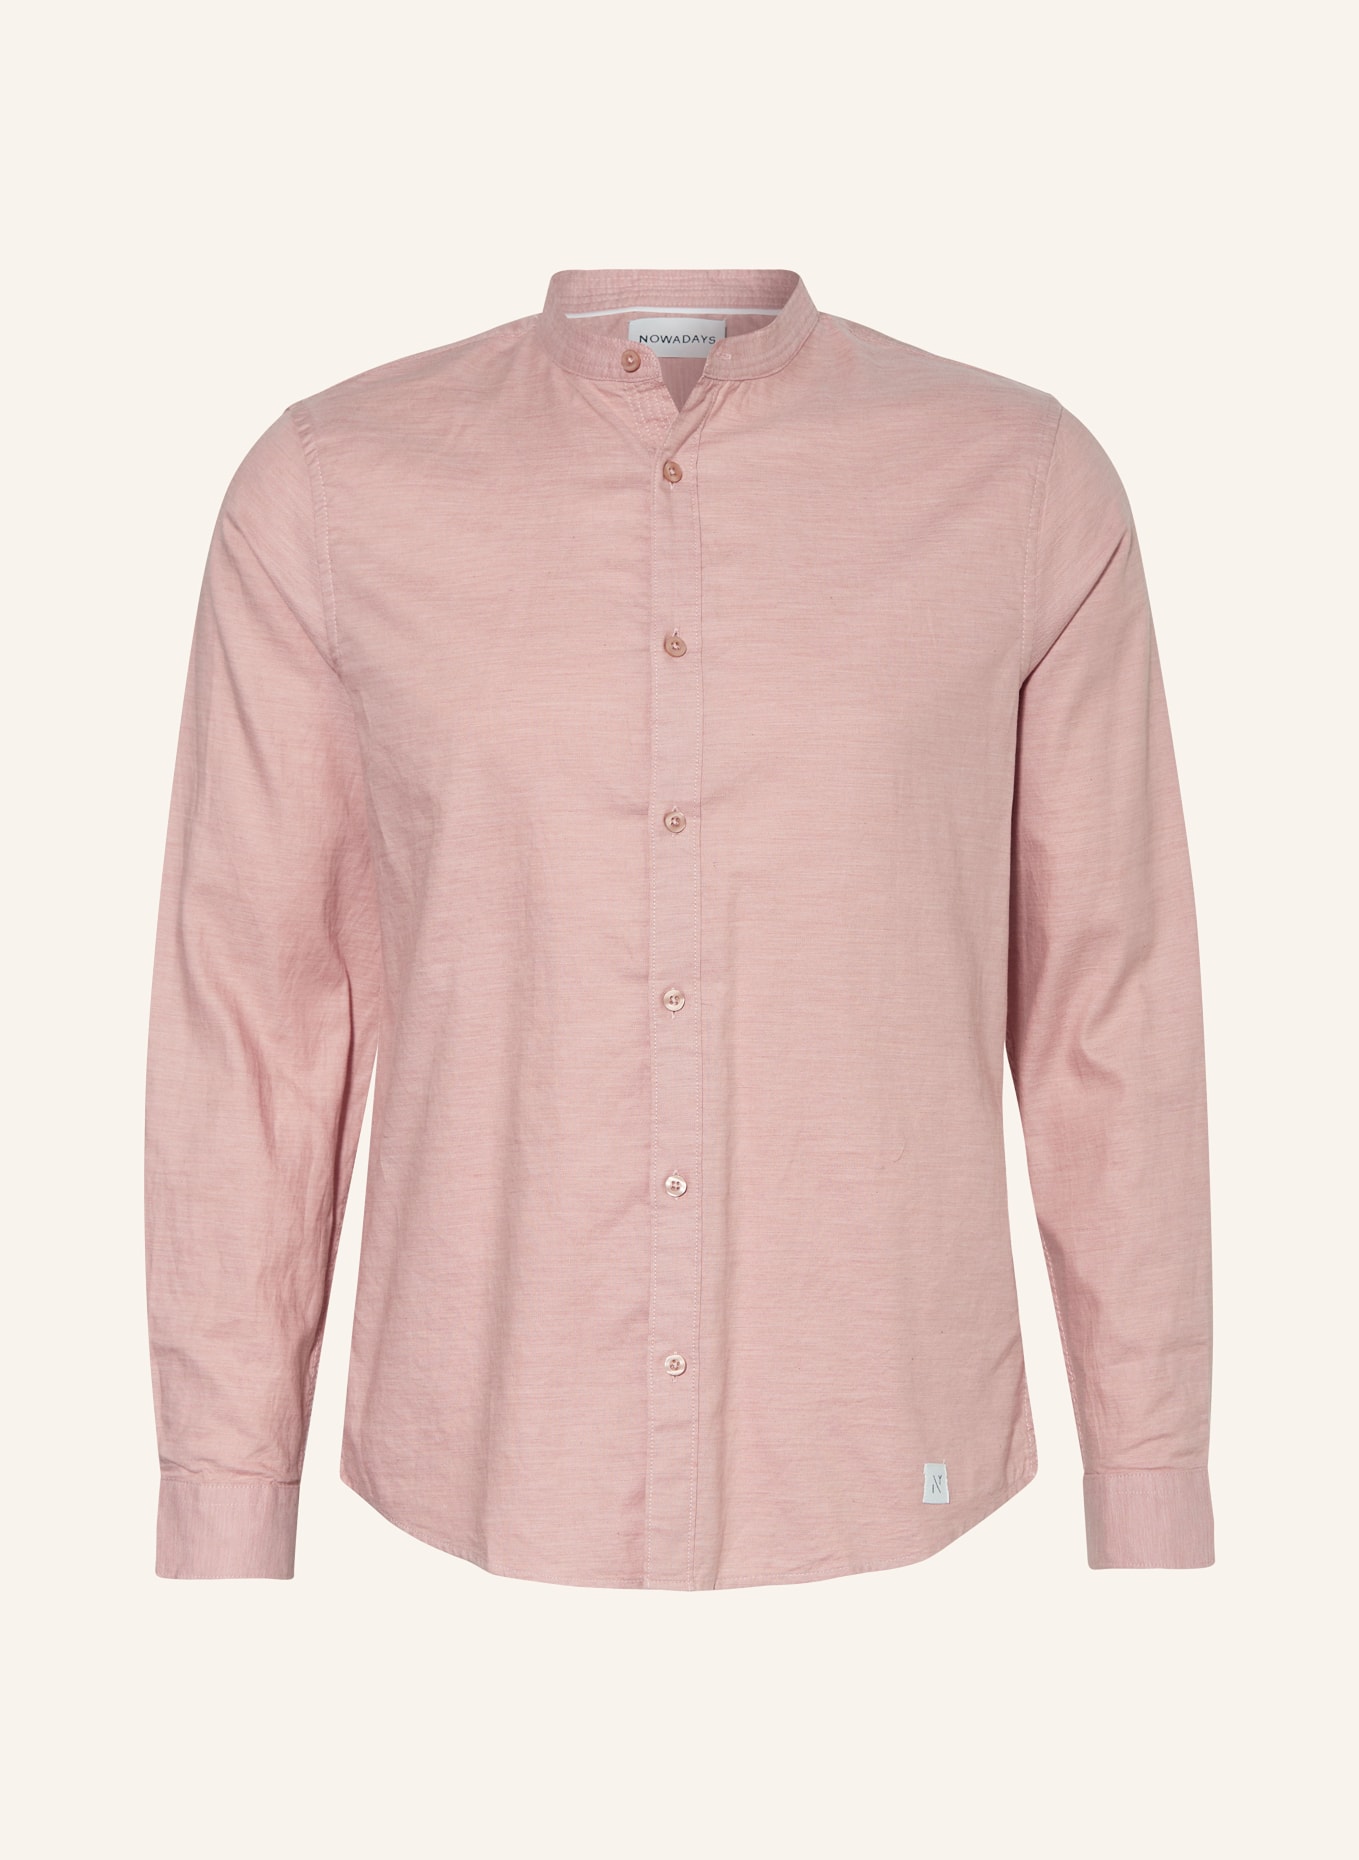 NOWADAYS Oxfordhemd Slim Fit mit Stehkragen, Farbe: ROSÉ (Bild 1)